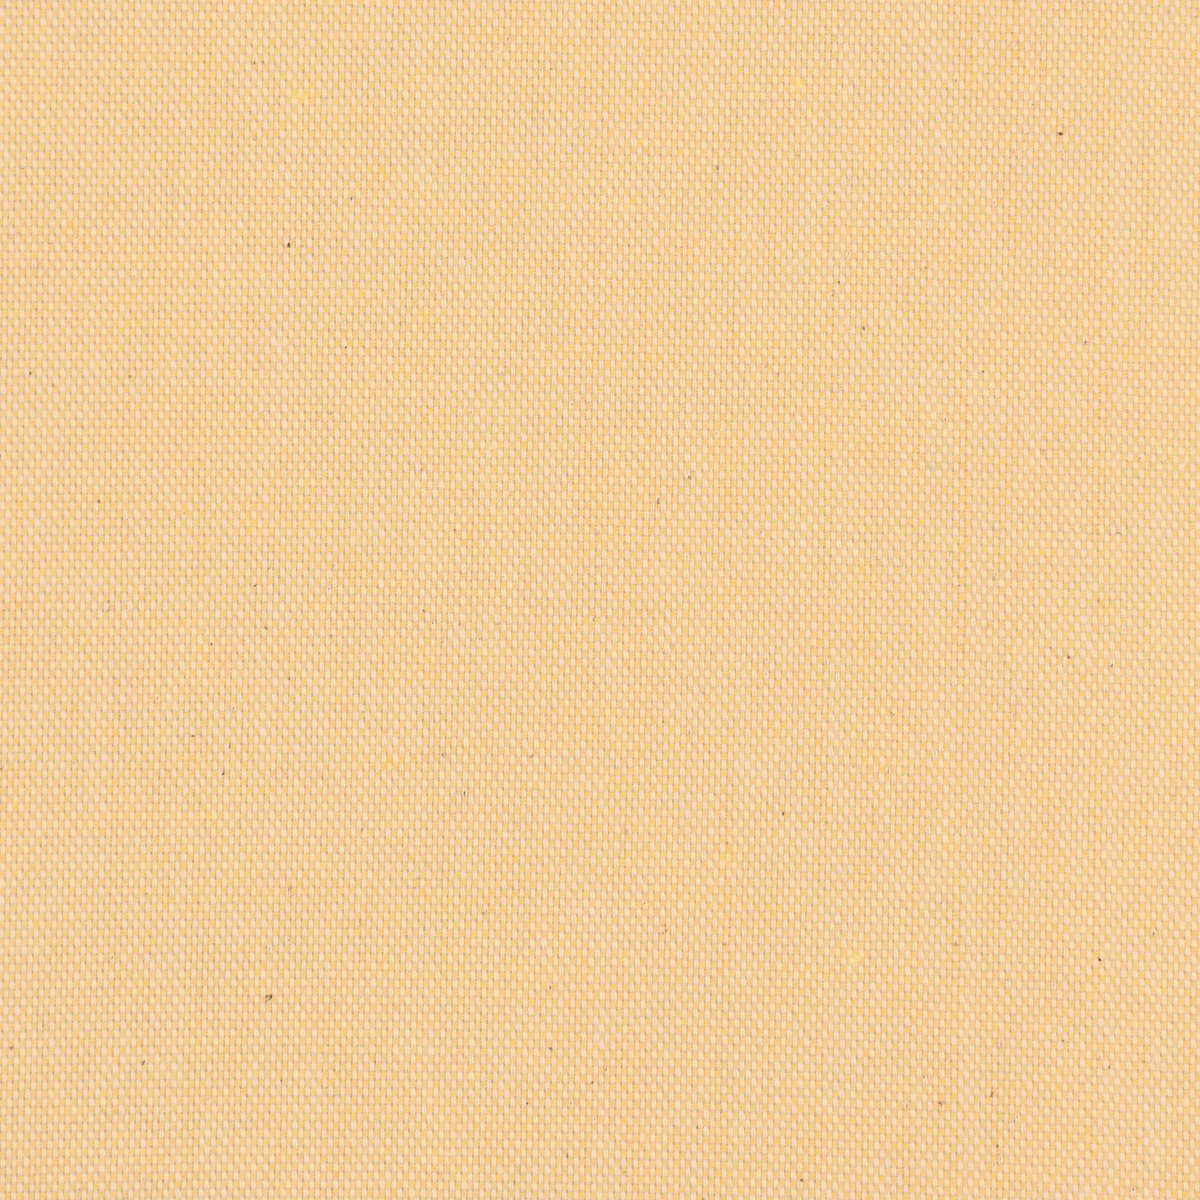 Vorhang SCHÖNER LEBEN. blickdicht, 245cm, Germany, (1 Leinenlook gelb SCHÖNER uni Smokband St), Vorhang vorgewaschen pastell LEBEN., made handmade, Kunstfaser, in